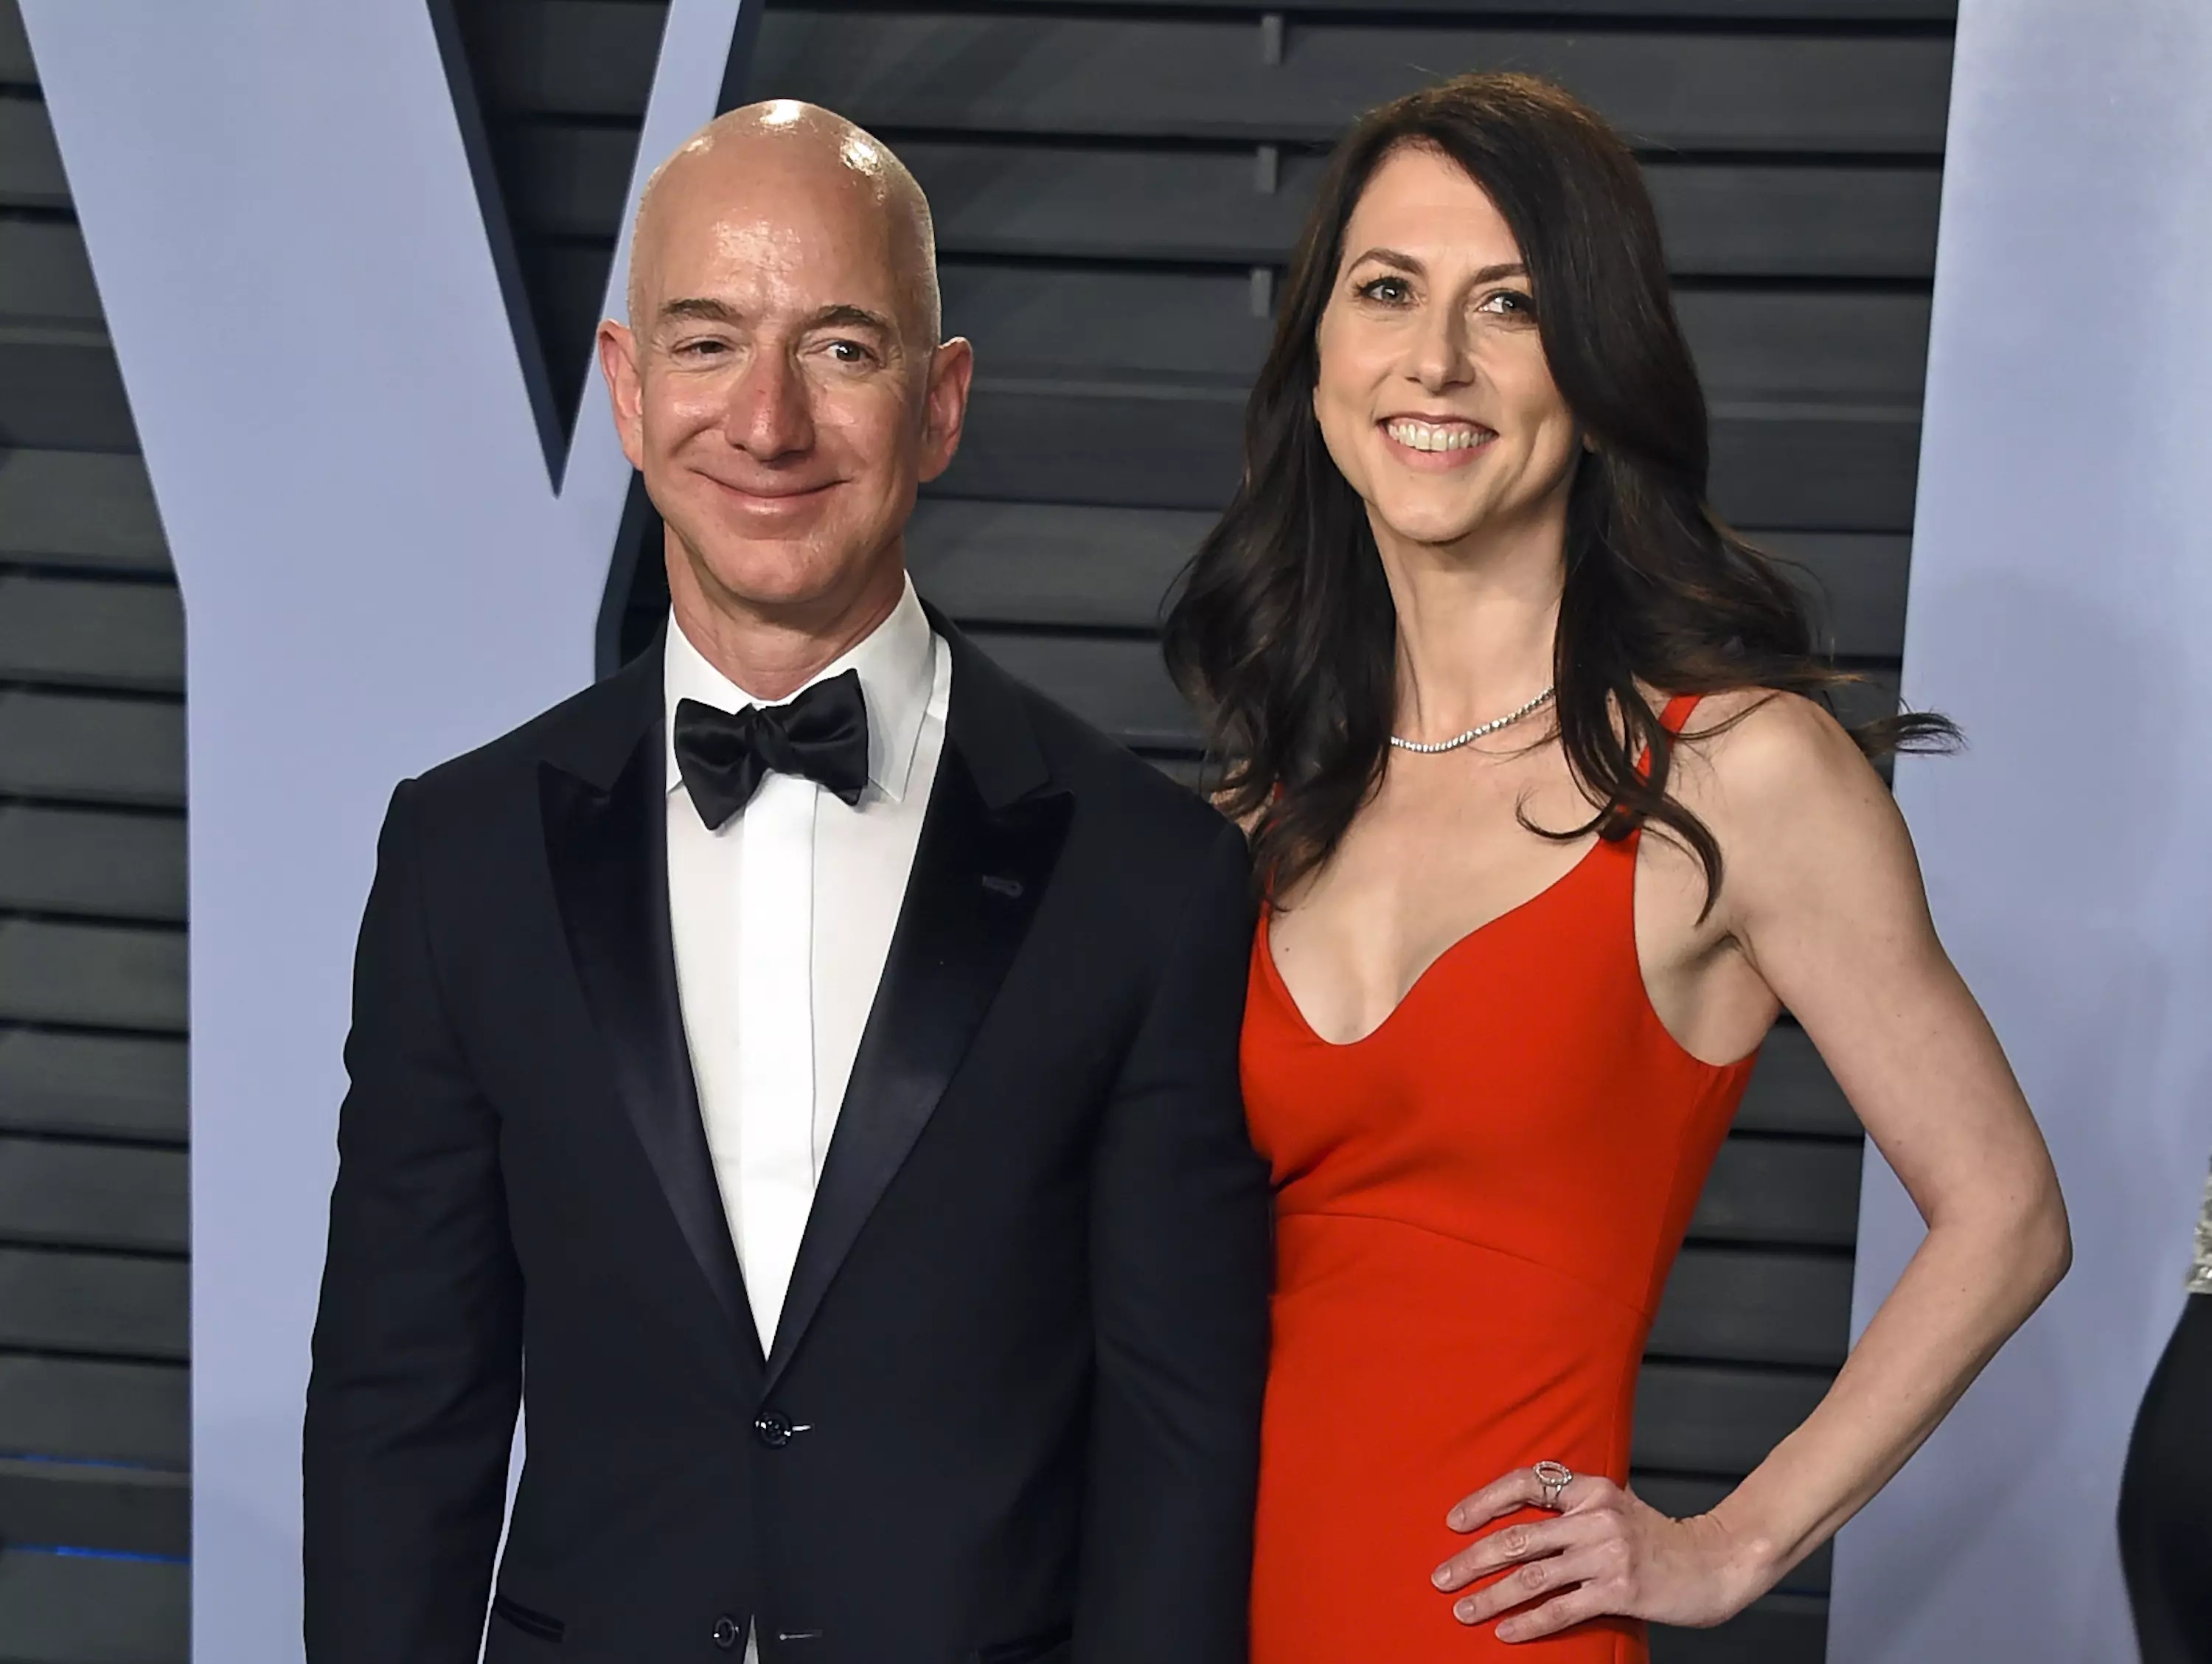 Jeff Bezos is CEO of Amazon.